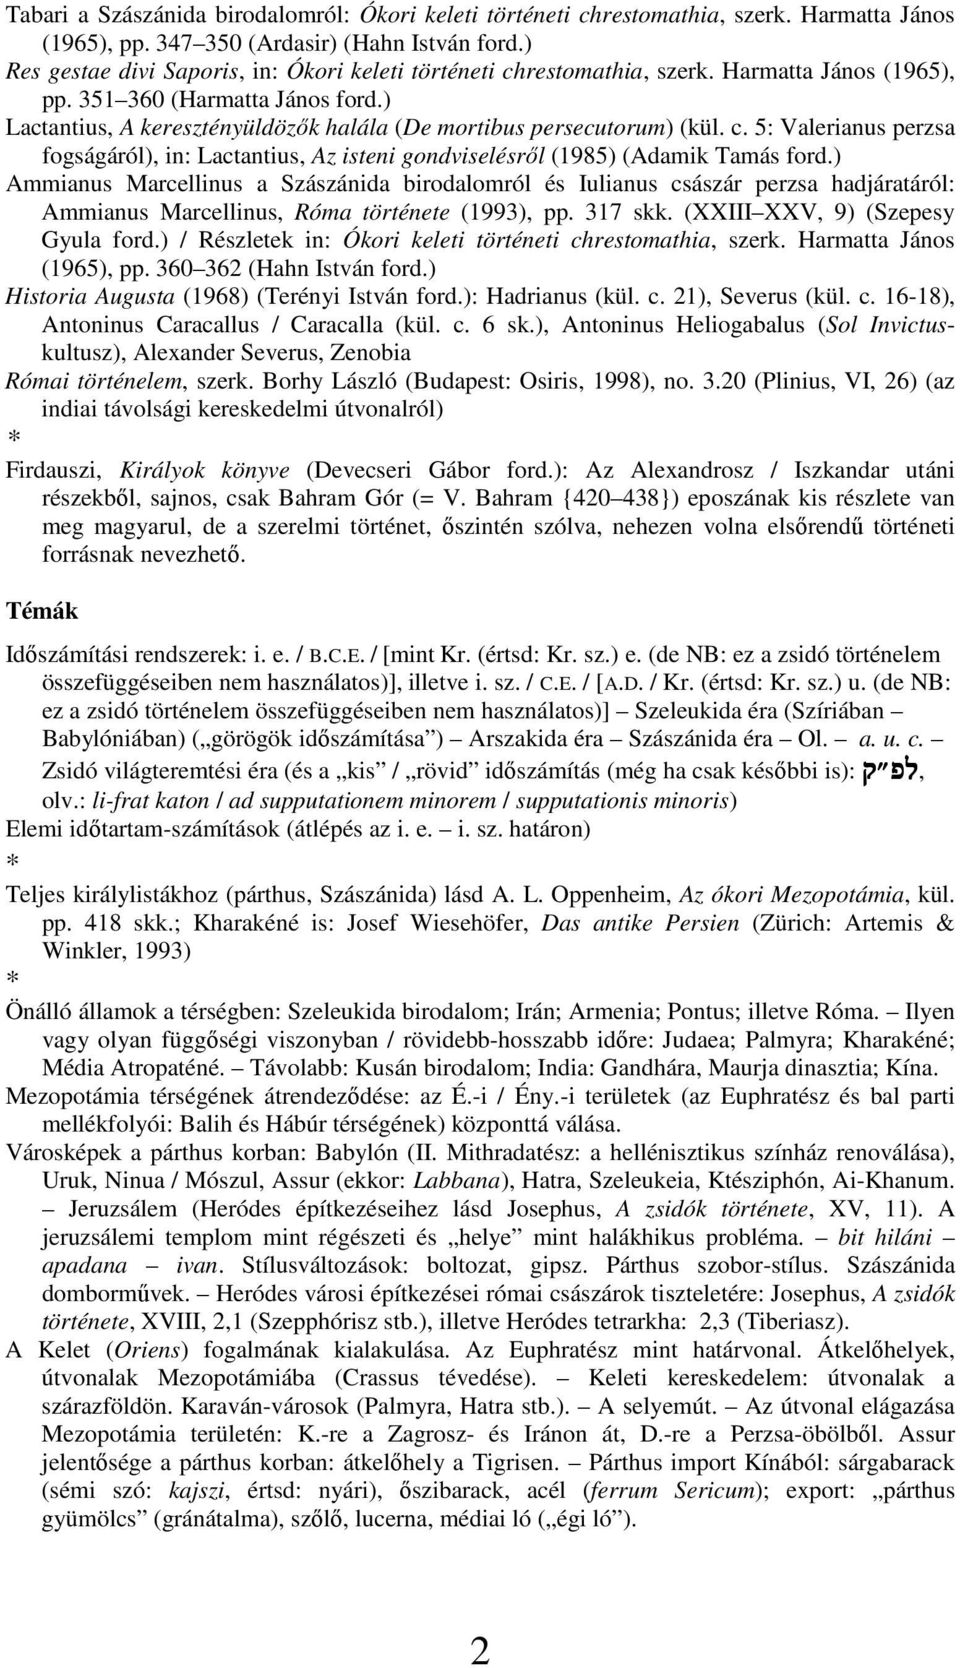 ) Lactantius, A keresztényüldözık halála (De mortibus persecutorum) (kül. c. 5: Valerianus perzsa fogságáról), in: Lactantius, Az isteni gondviselésrıl (1985) (Adamik Tamás ford.